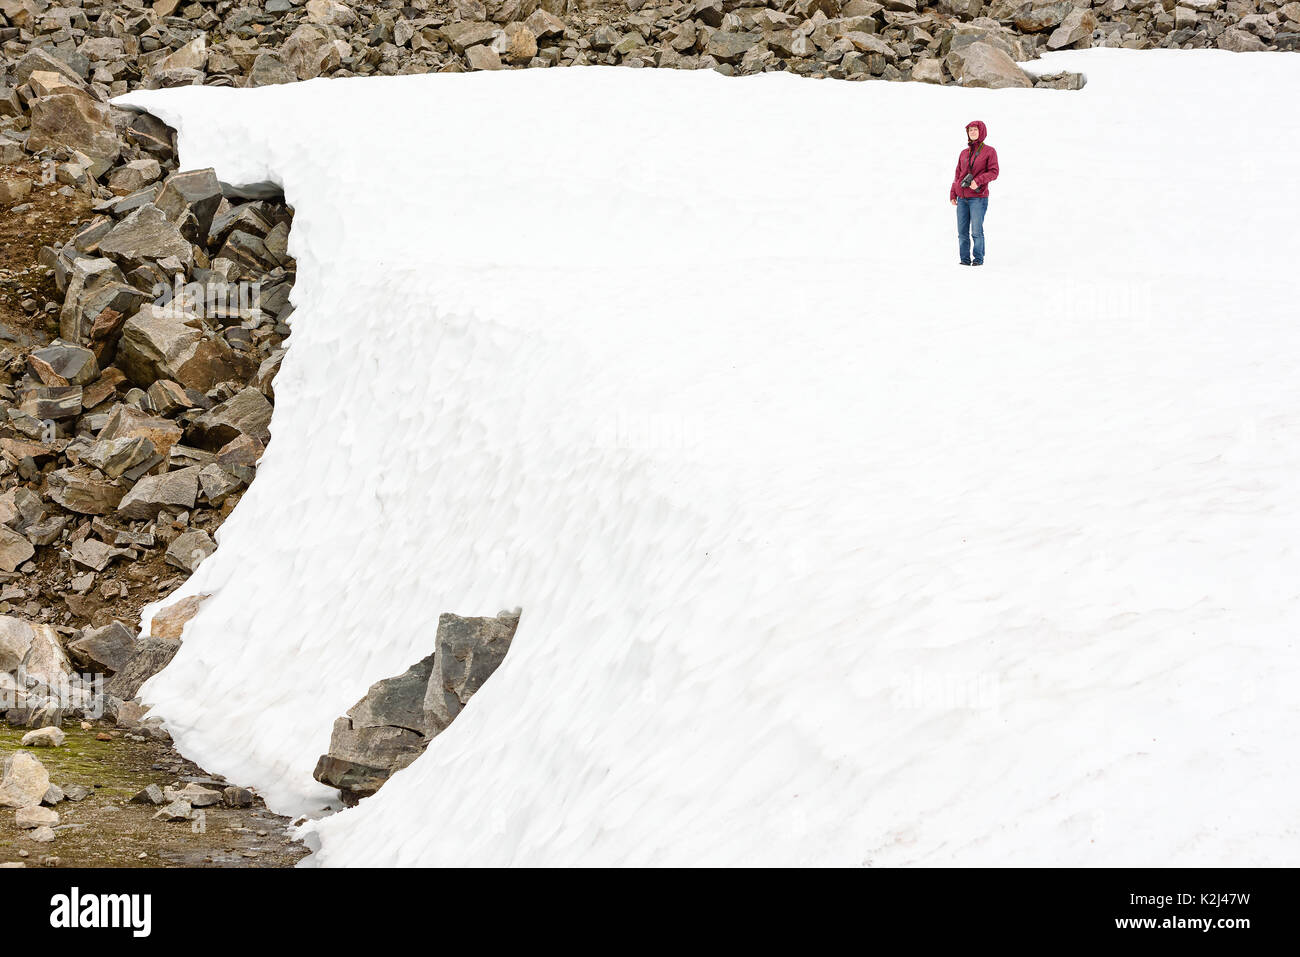 Junge erwachsene Frau stehend auf schmelzendem Eis mit der Kamera in der Hand. Felsen sichtbar, wo das Eis endet. Stockfoto